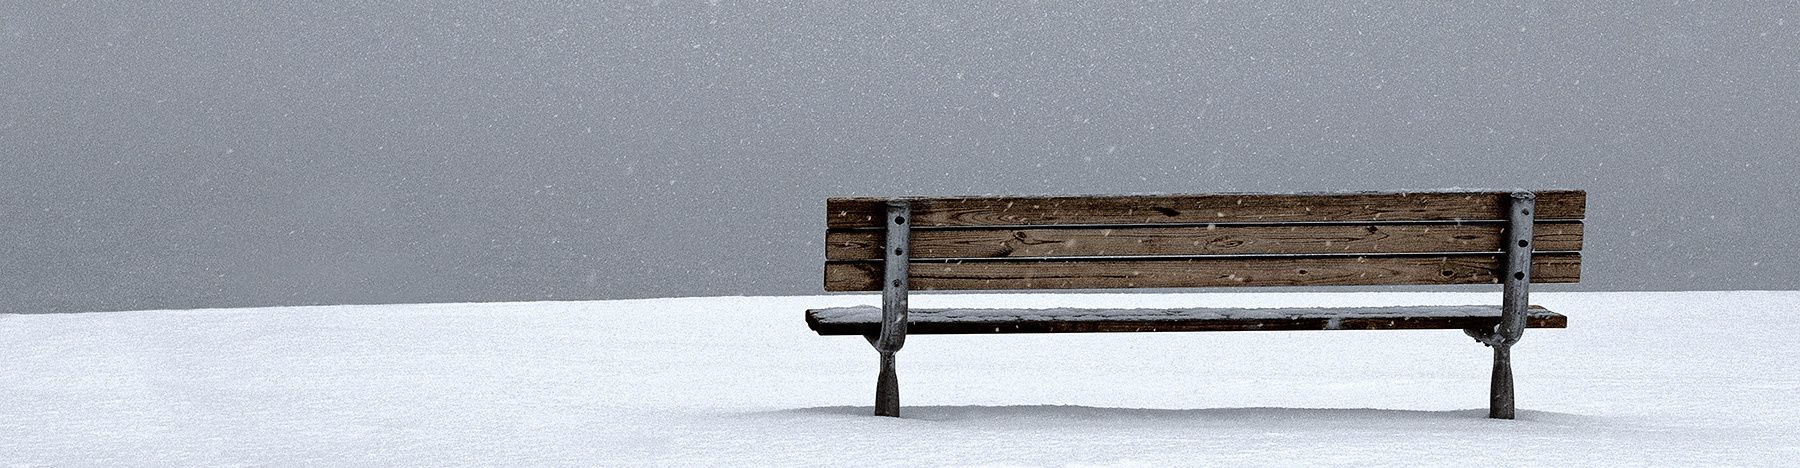 101_bench_winter.jpg